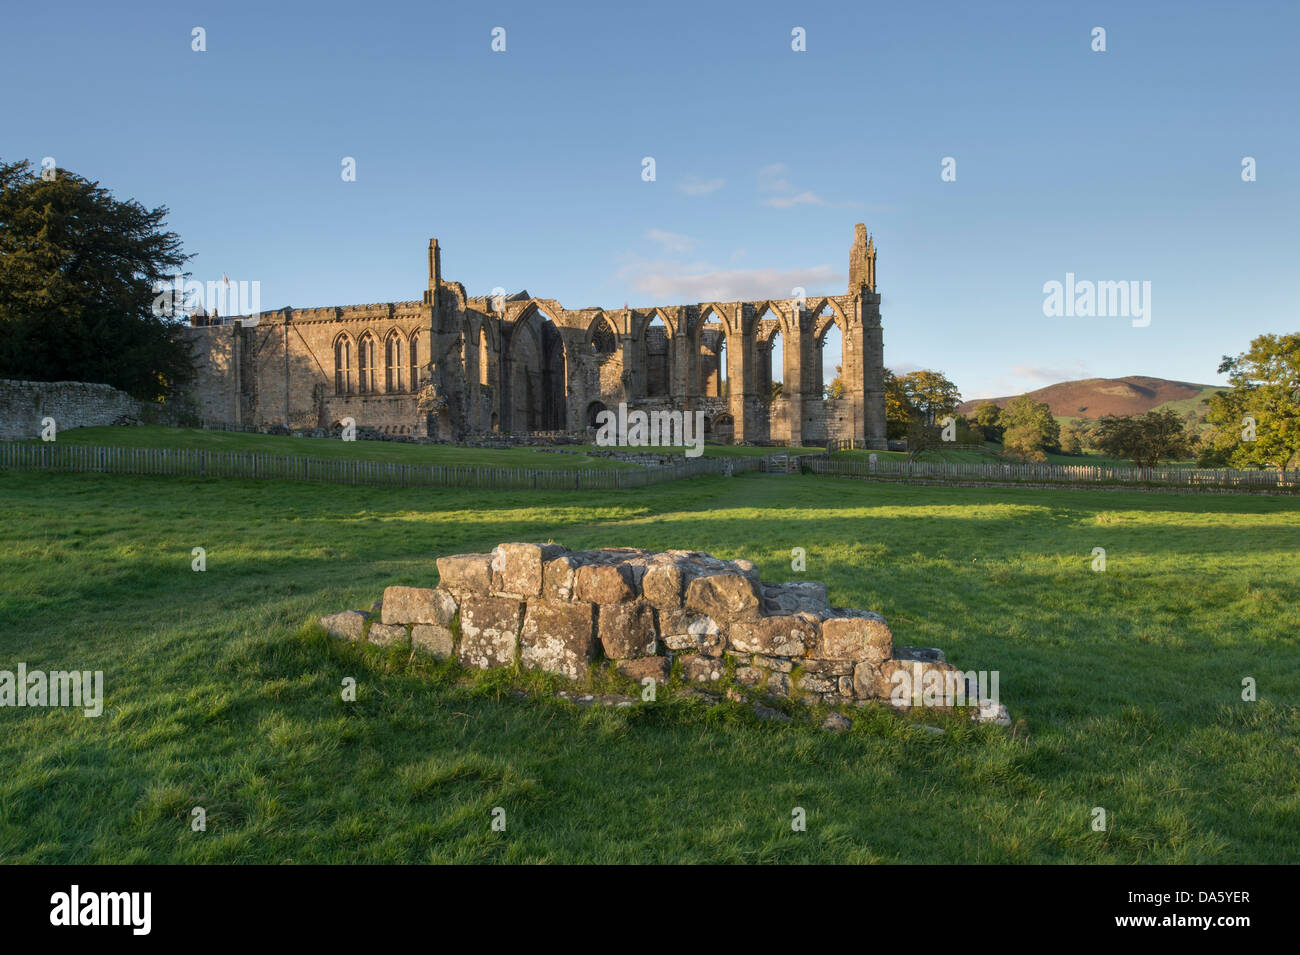 Vista da sud del soleggiato, antico, pittoresche rovine monastiche di Bolton Abbey & priory chiesa, nella pittoresca campagna - Yorkshire Dales, Inghilterra, Regno Unito. Foto Stock